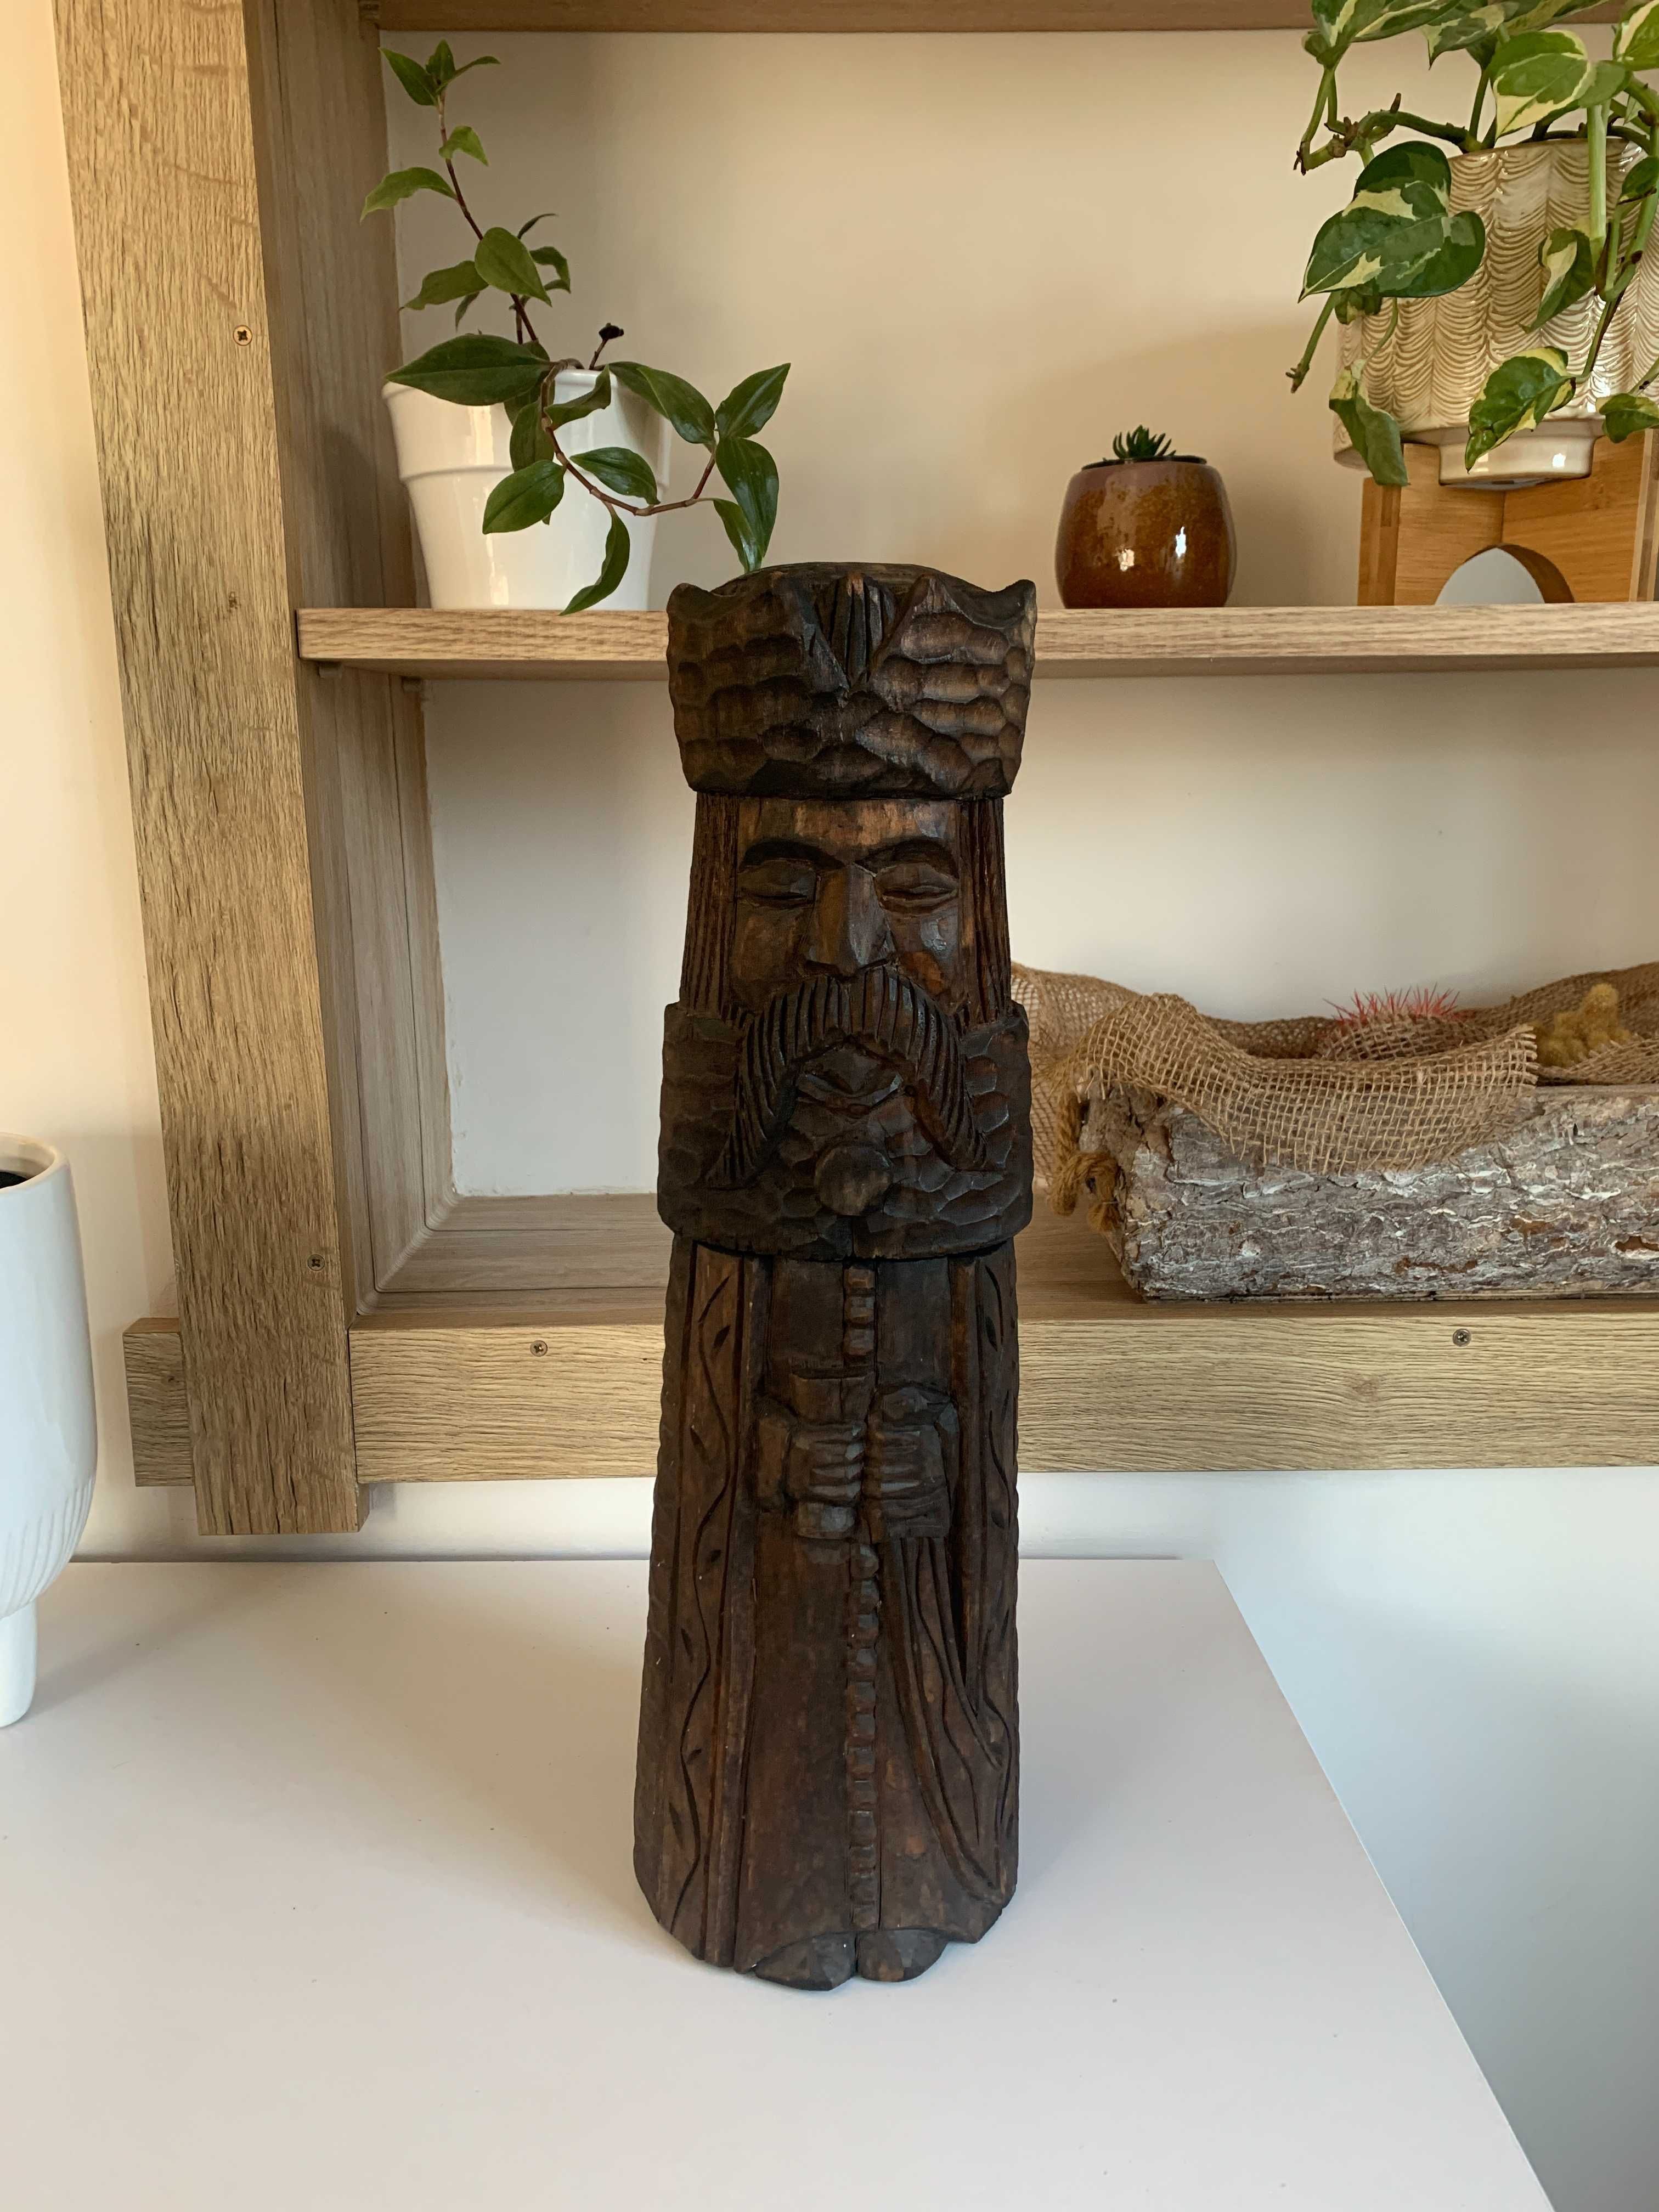 drewniana rzeźbiona figurka król schowek w środku